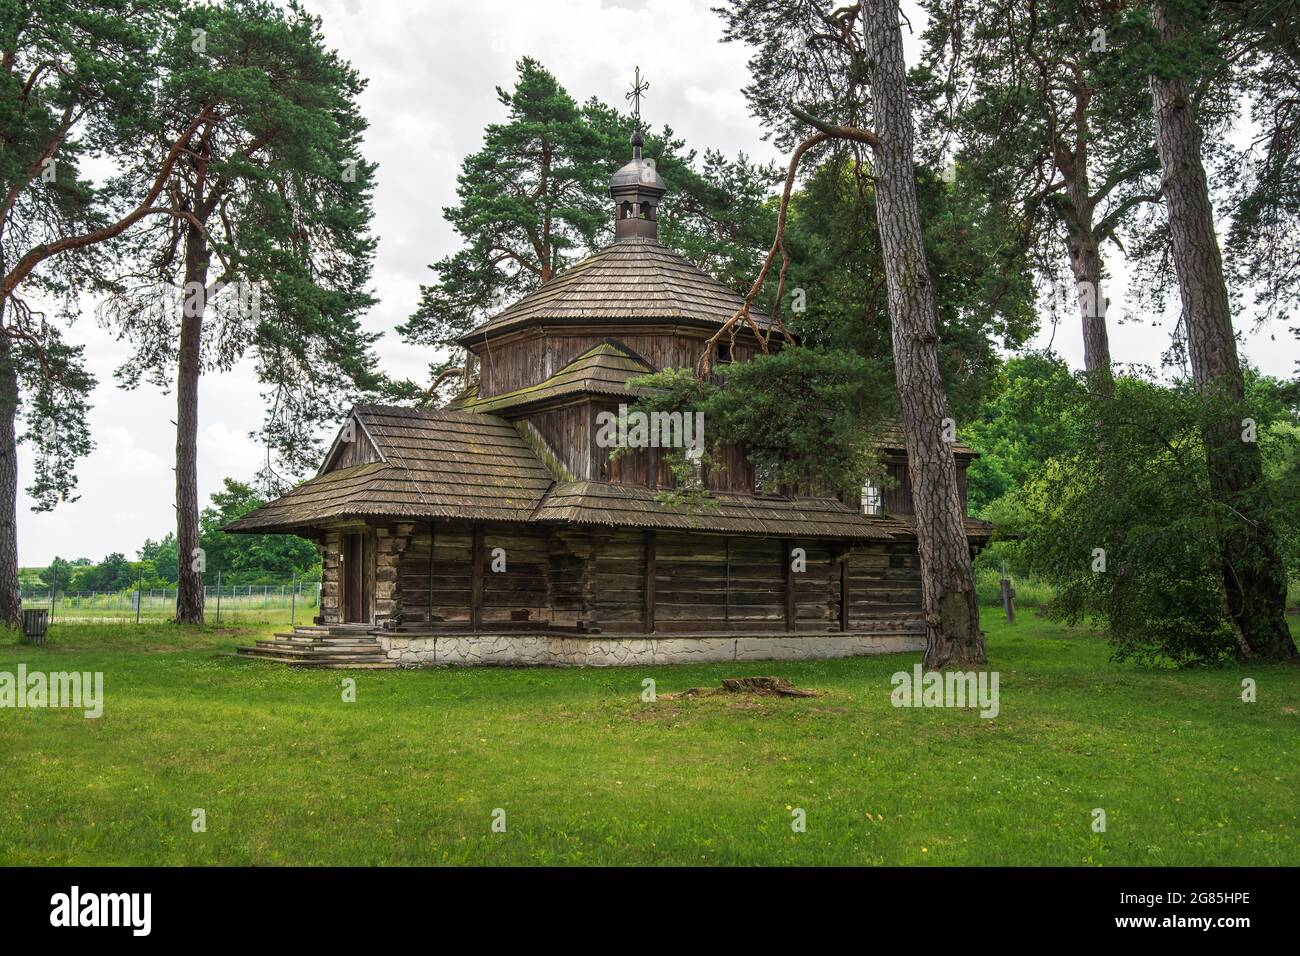 Chiesa di San Bazyli in legno greco-cattolica a Belzec, costruita nel 1756, situata su un ex cimitero, circondato da alberi antichi. Belzec, Roztocze, Polonia Foto Stock